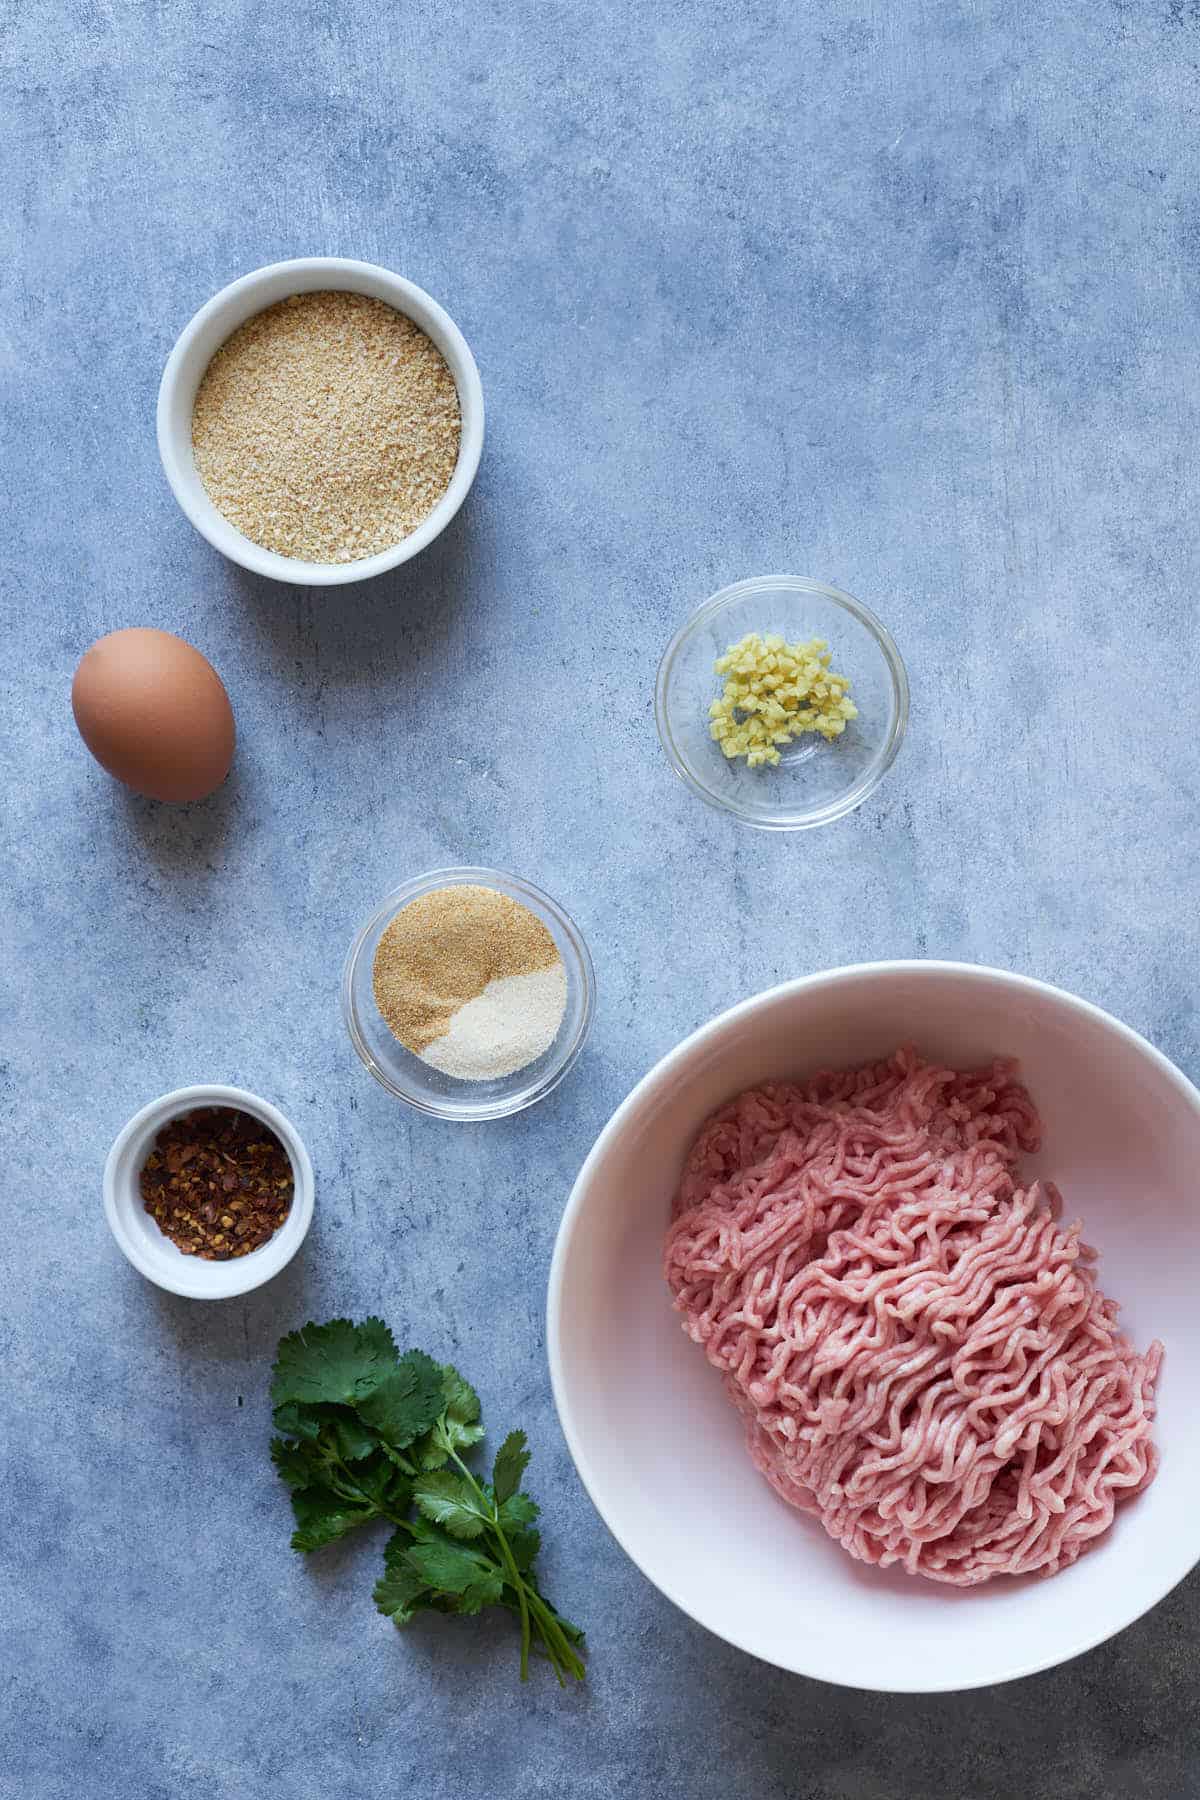 Ingredients to make air fryer pork meatballs.